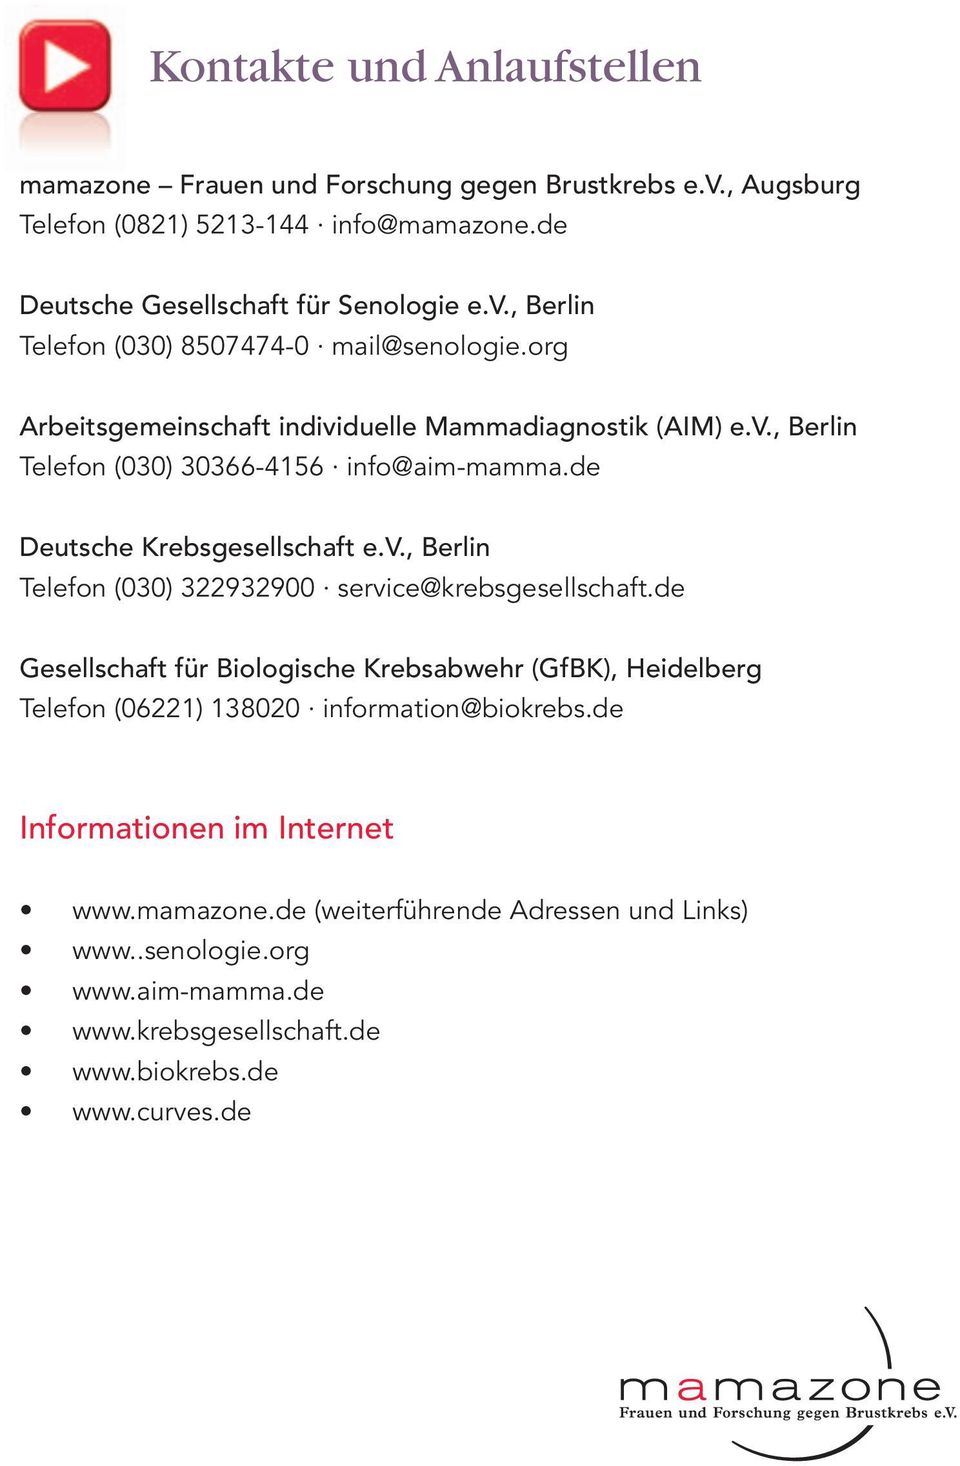 de Gesellschaft für Biologische Krebsabwehr (GfBK), Heidelberg Telefon (06221) 138020 information@biokrebs.de Informationen im Internet www.mamazone.